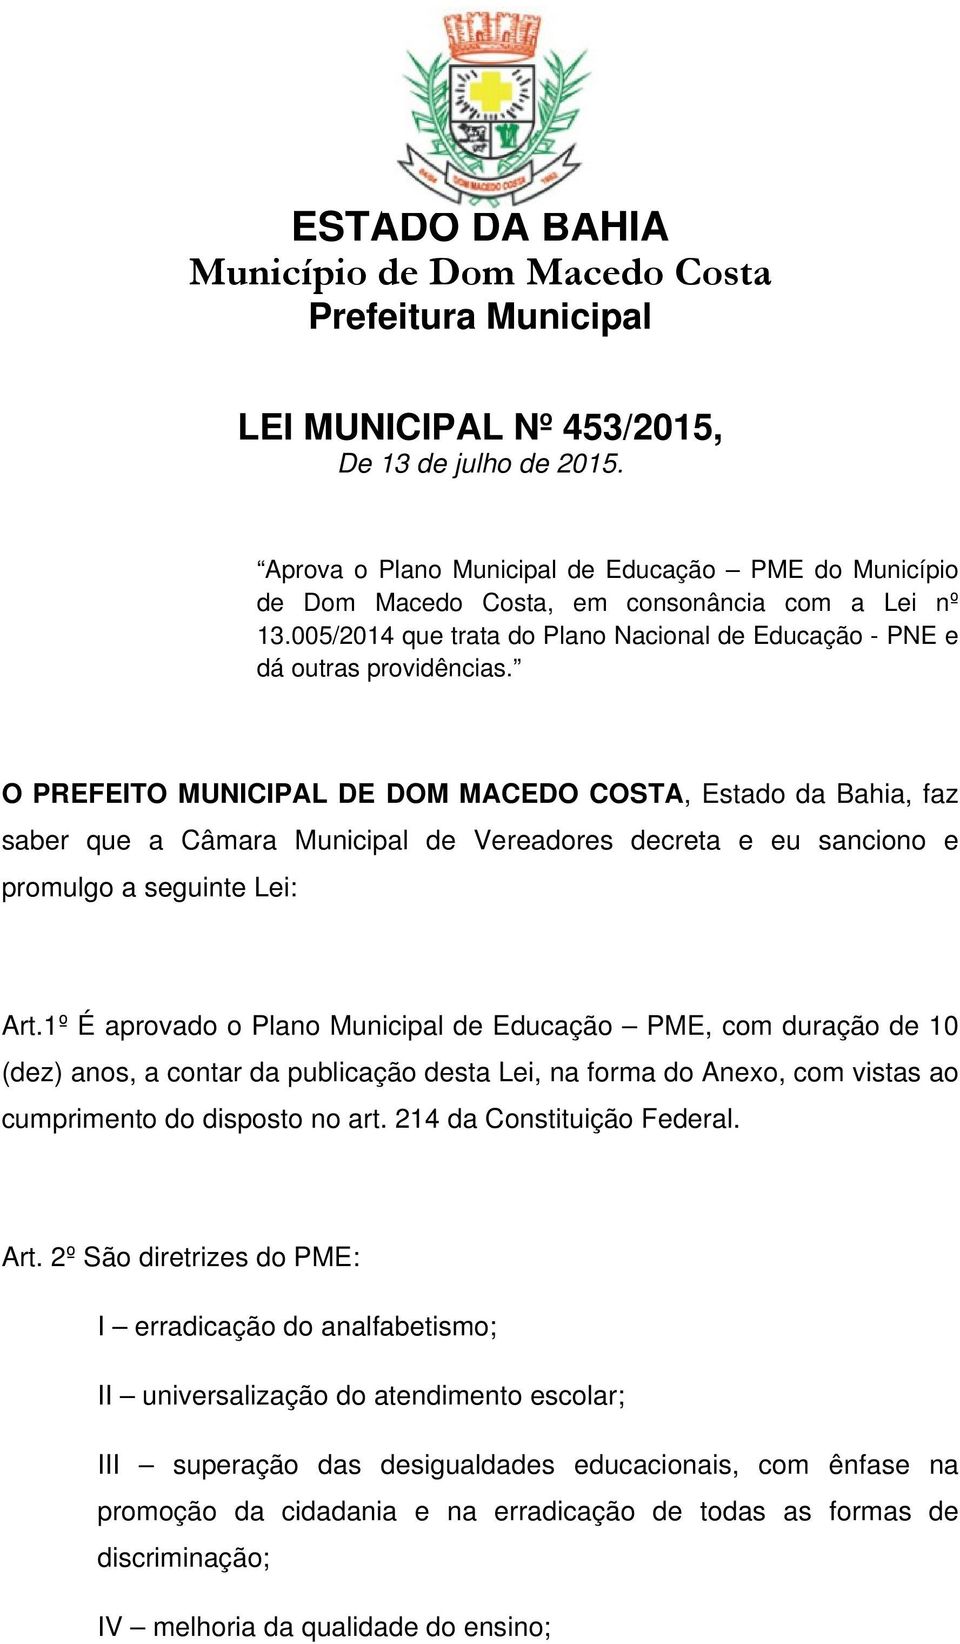 O PREFEITO MUNICIPAL DE DOM MACEDO COSTA, Estado da Bahia, faz saber que a Câmara Municipal de Vereadores decreta e eu sanciono e promulgo a seguinte Lei: Art.